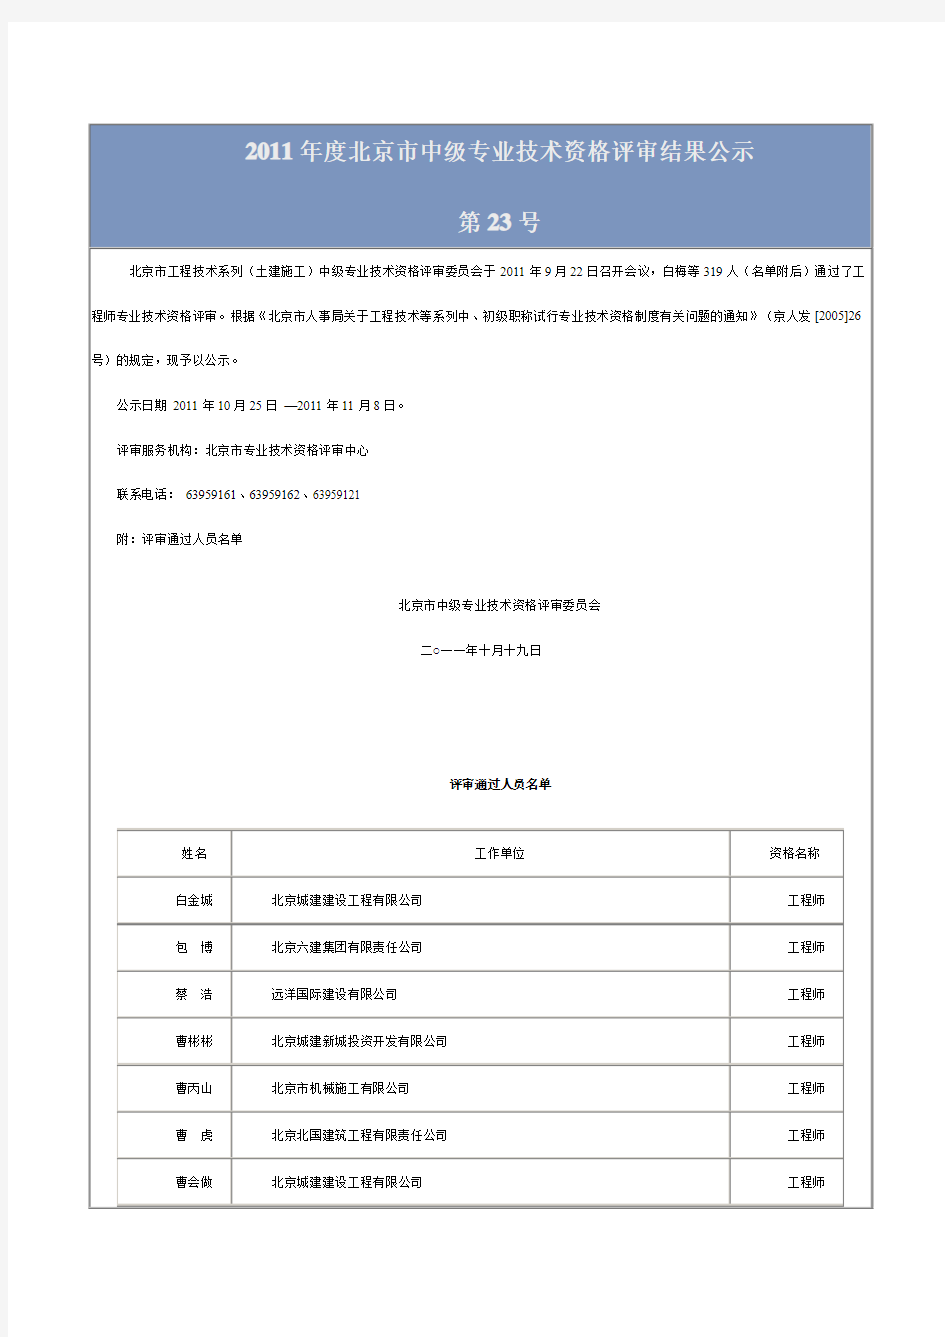 2011年度北京市中级专业技术资格评审结果